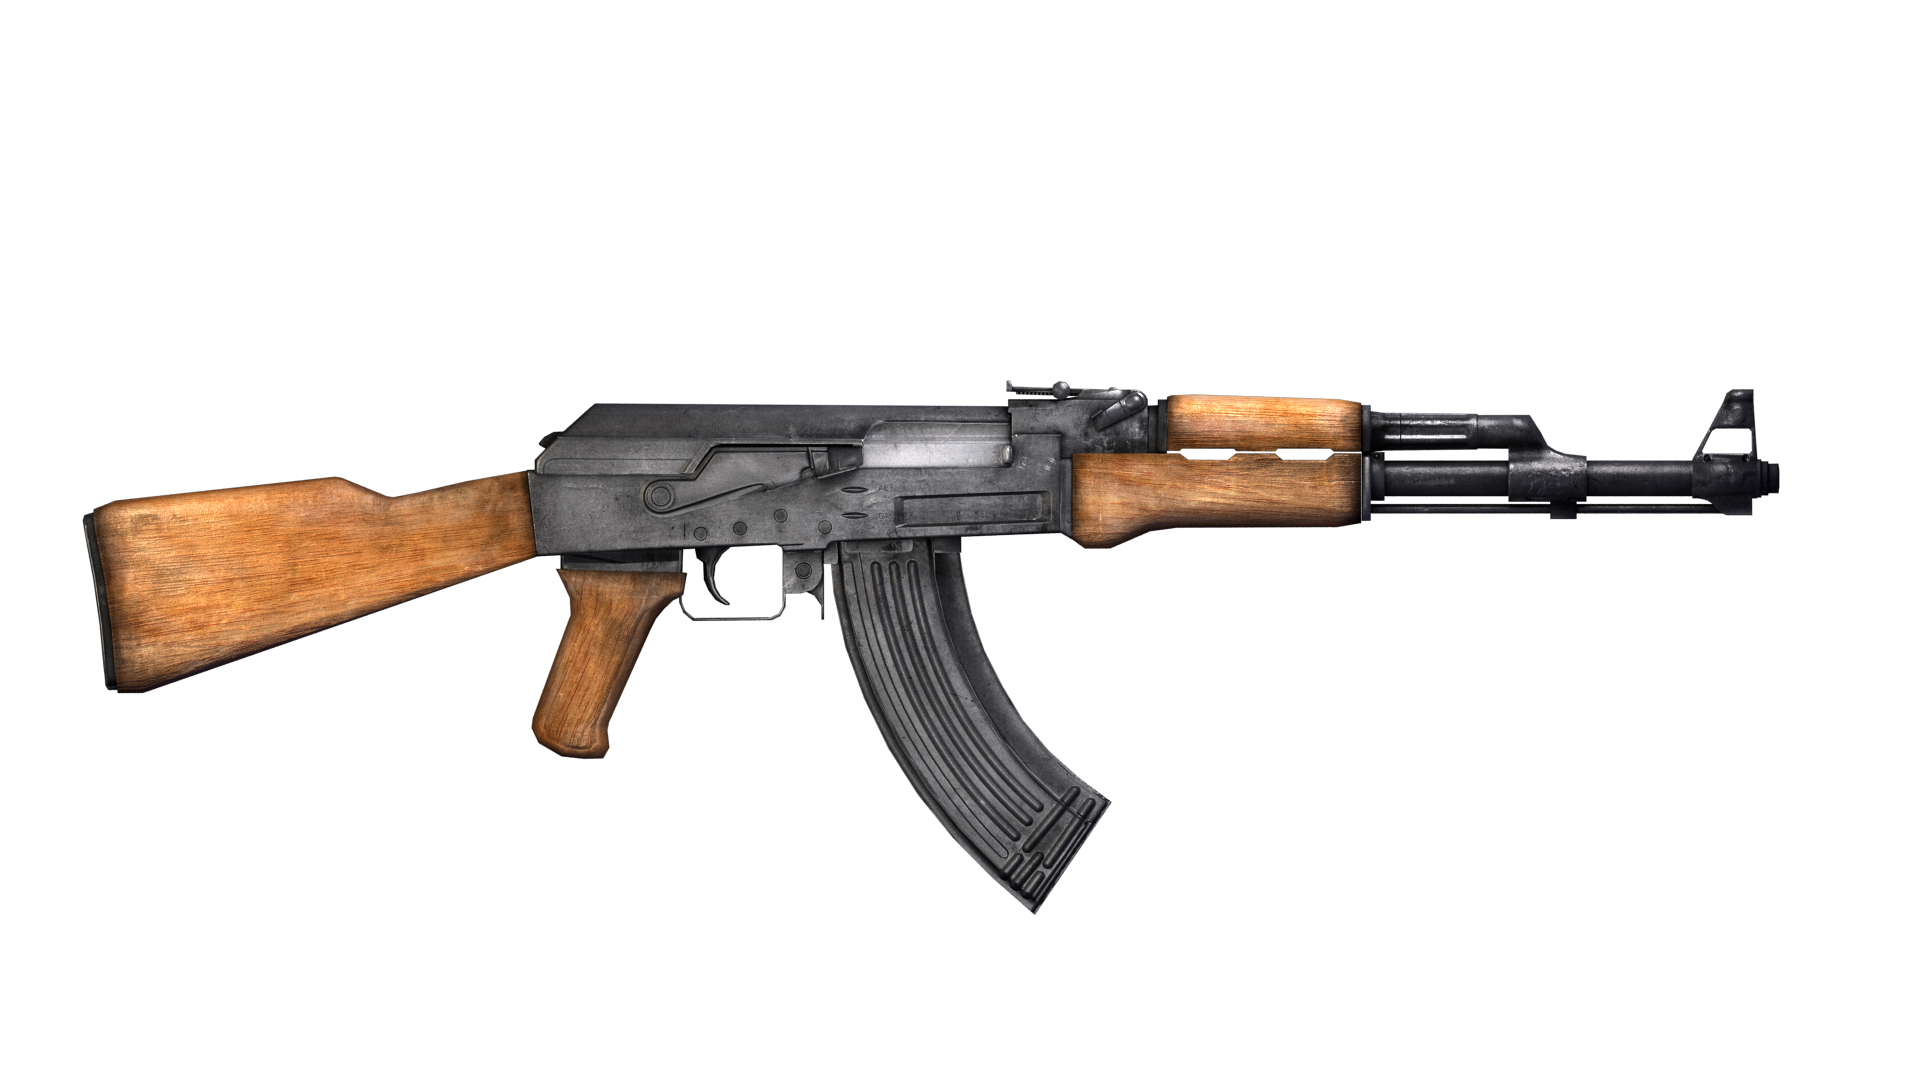 AK-47 高清壁纸 | 桌面背景 | 2000x1273 | ID:637461 - Wallpaper Abyss